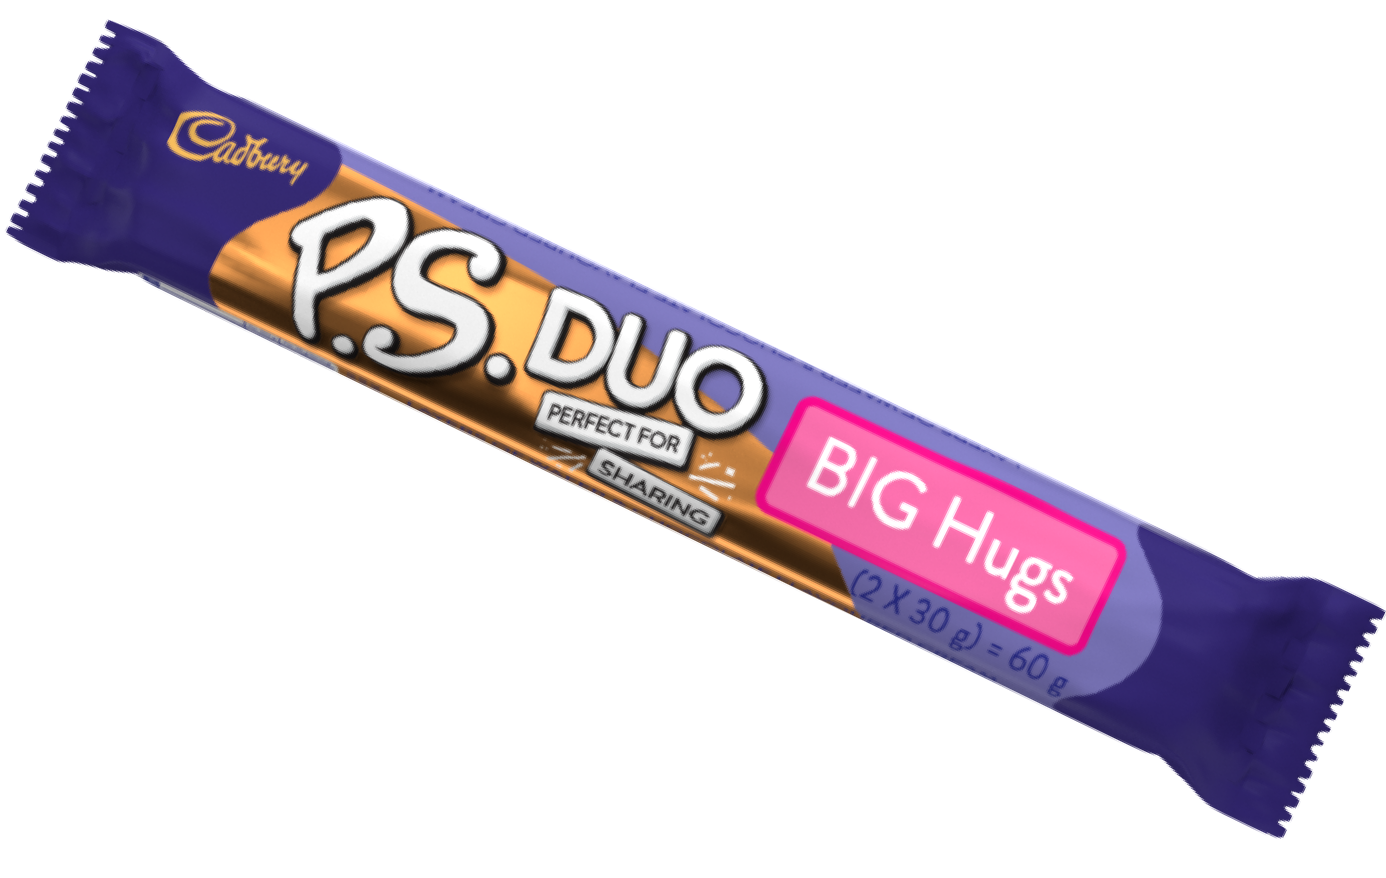 PS Big Hugs